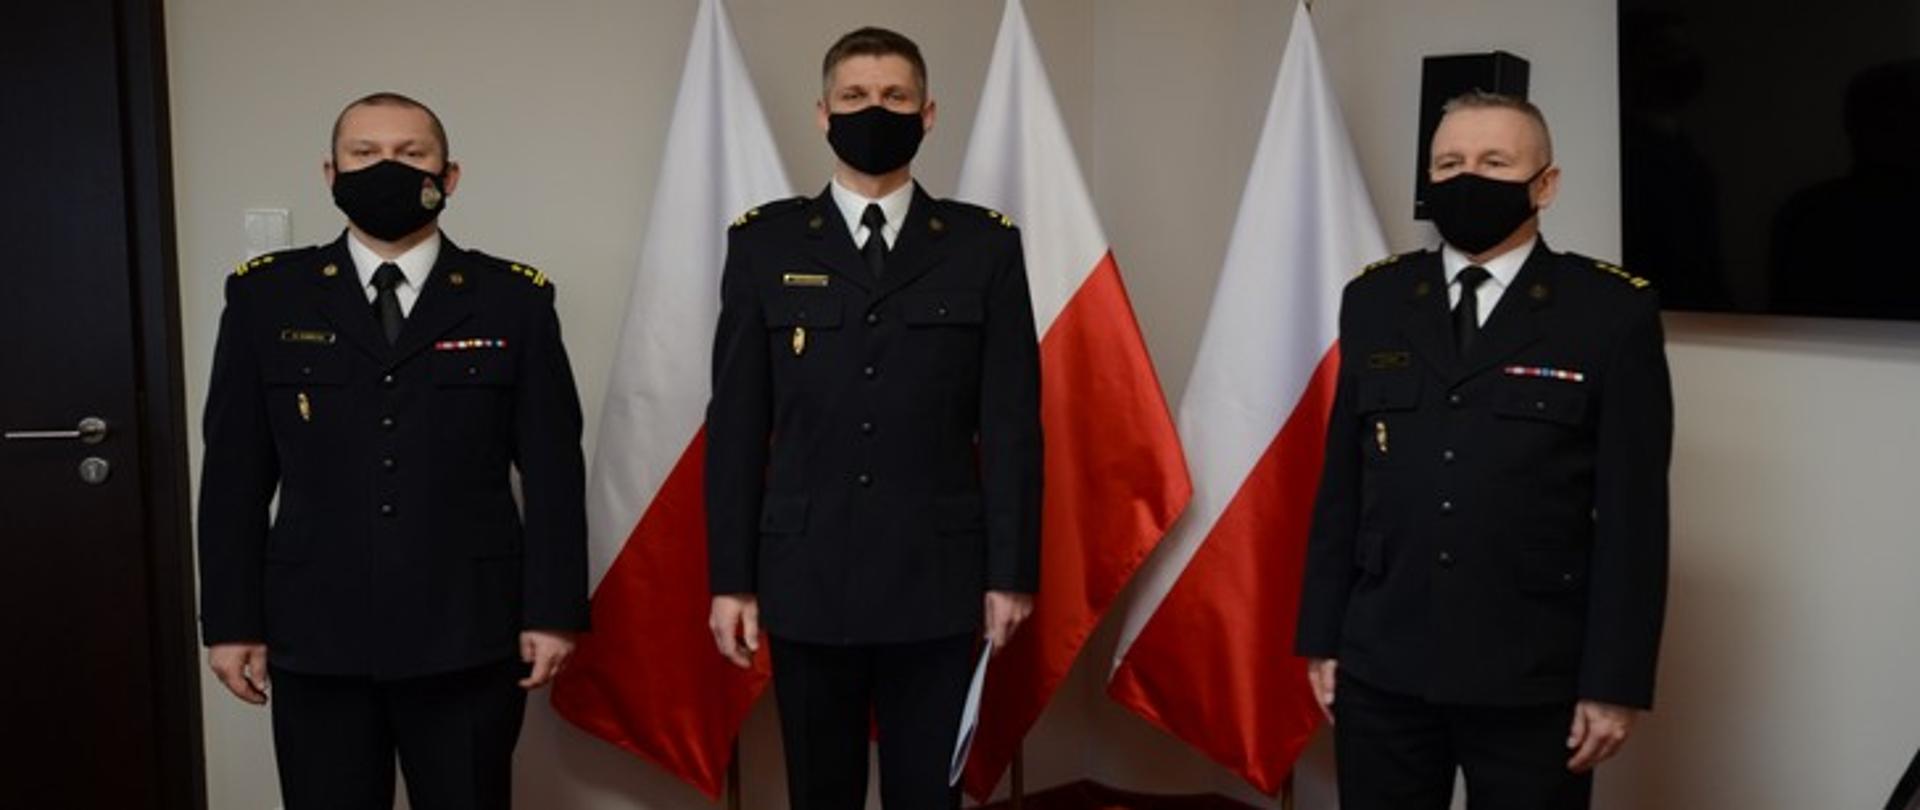 Zdjęcie przedstawia trzech oficerów PSP w mundurach wyjściowych na tle flag państwowych.